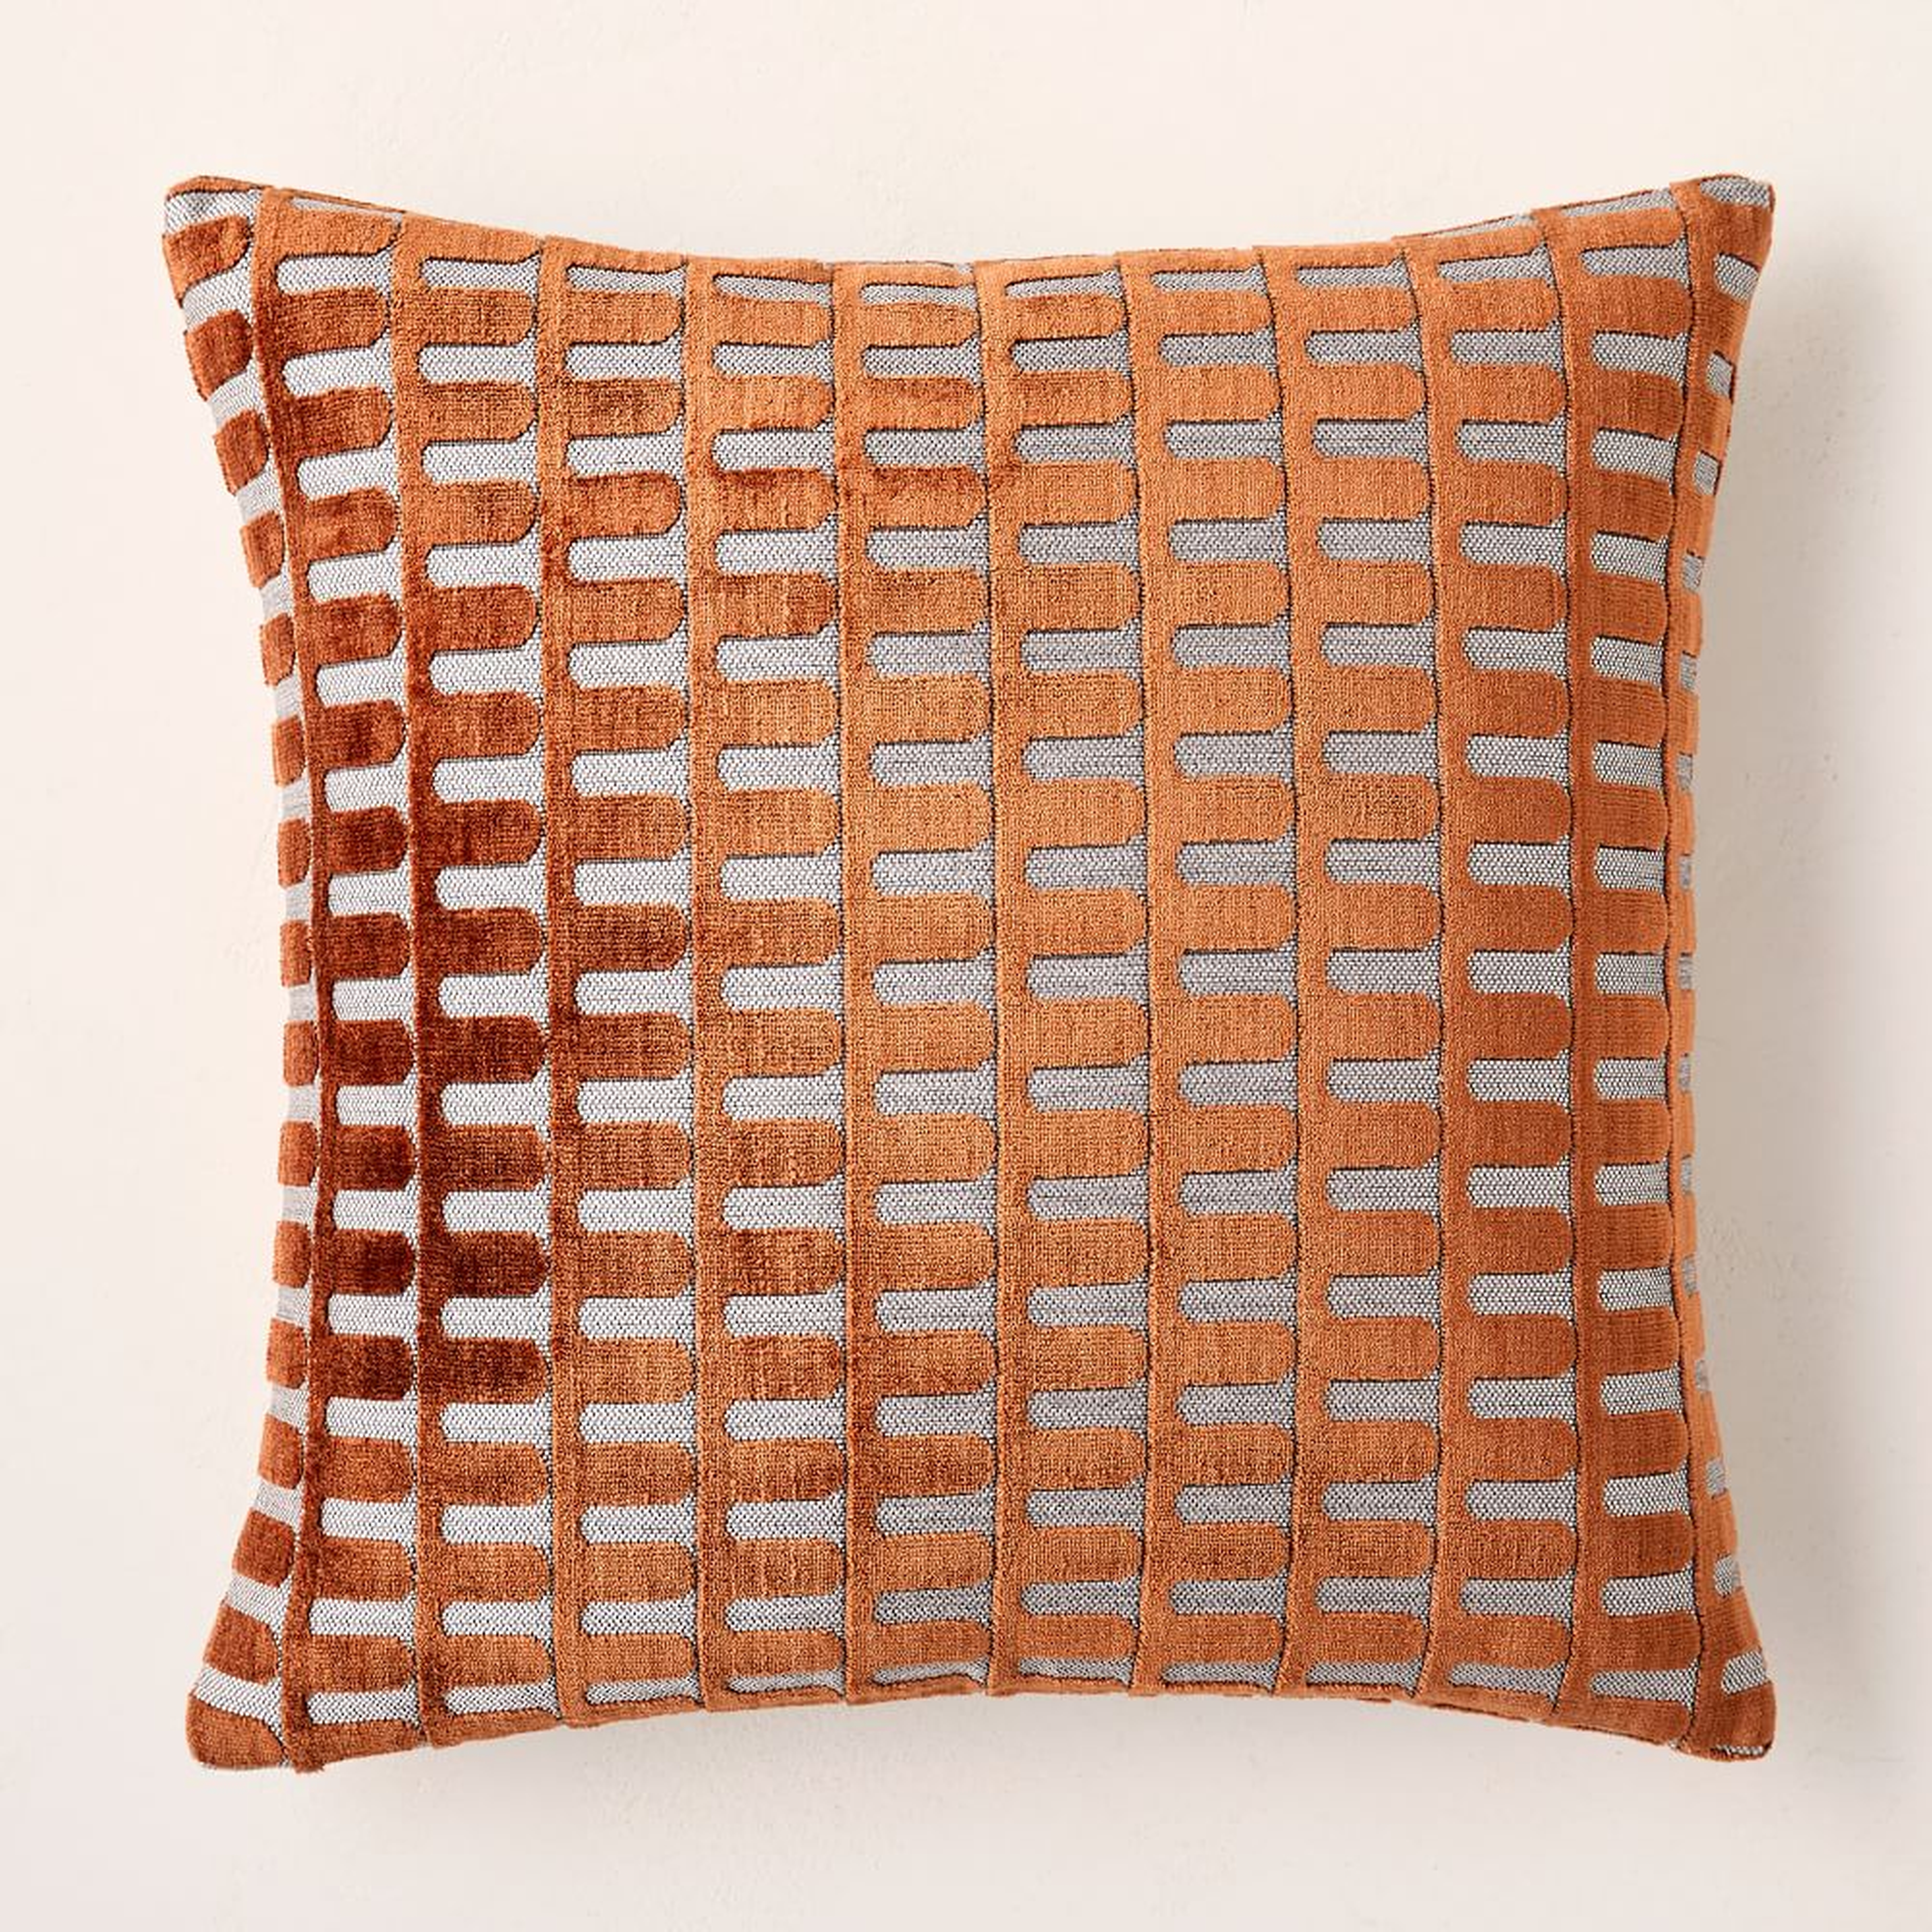 Cut Velvet Archways Pillow Cover, 20"x20", Copper, Set of 2 - West Elm